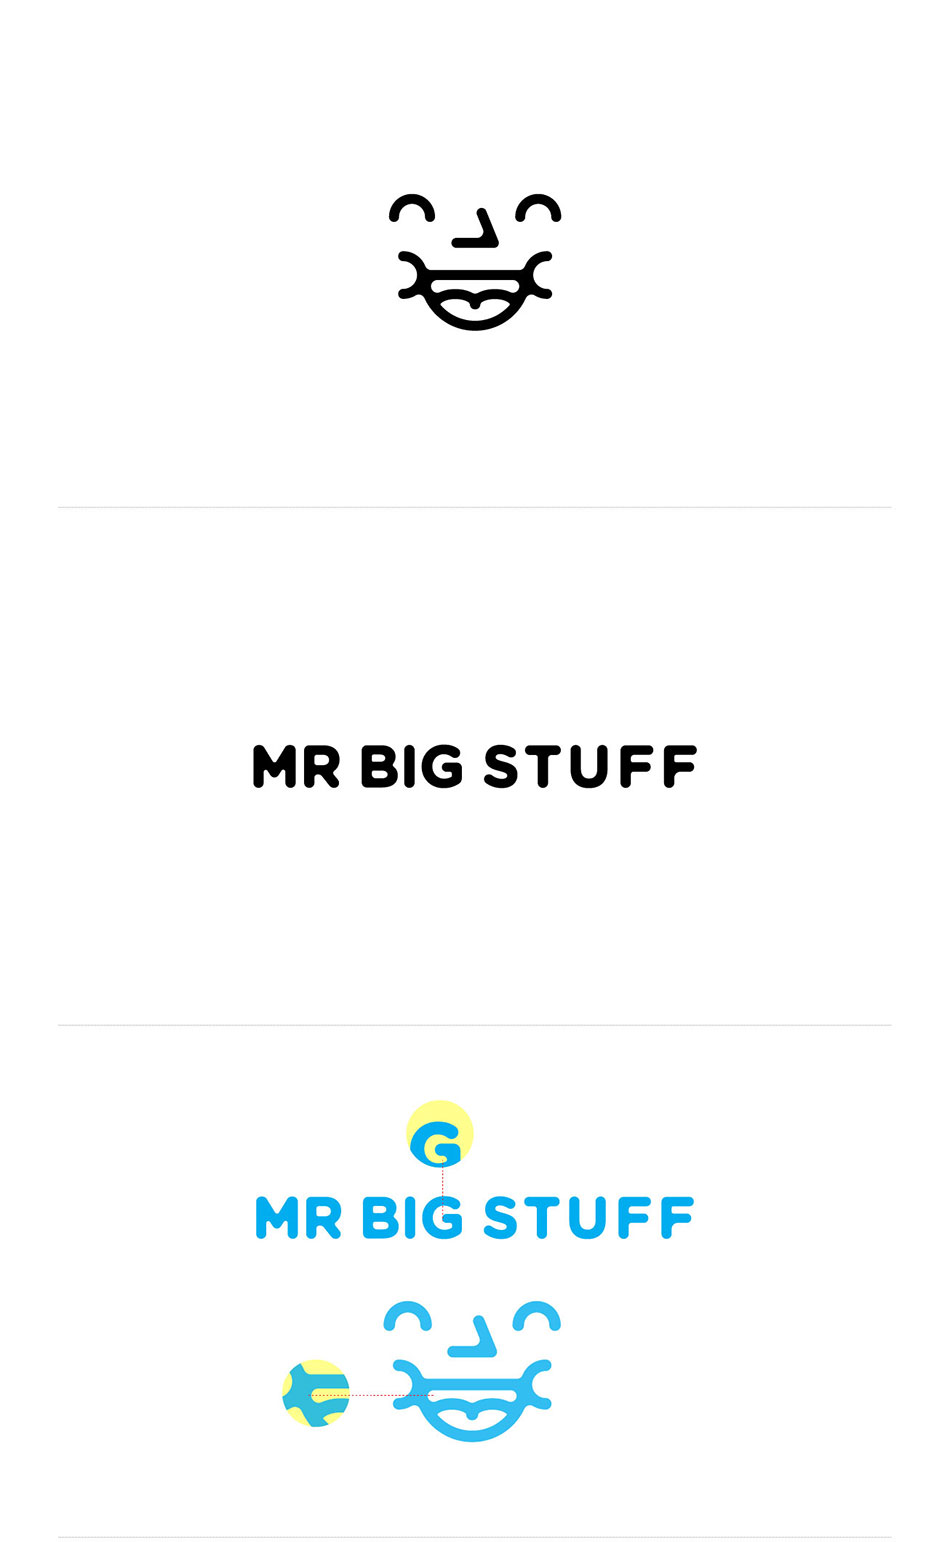 成都摩品商业空间设计公司-Mr Big Stuff汉堡店形象设计欣赏